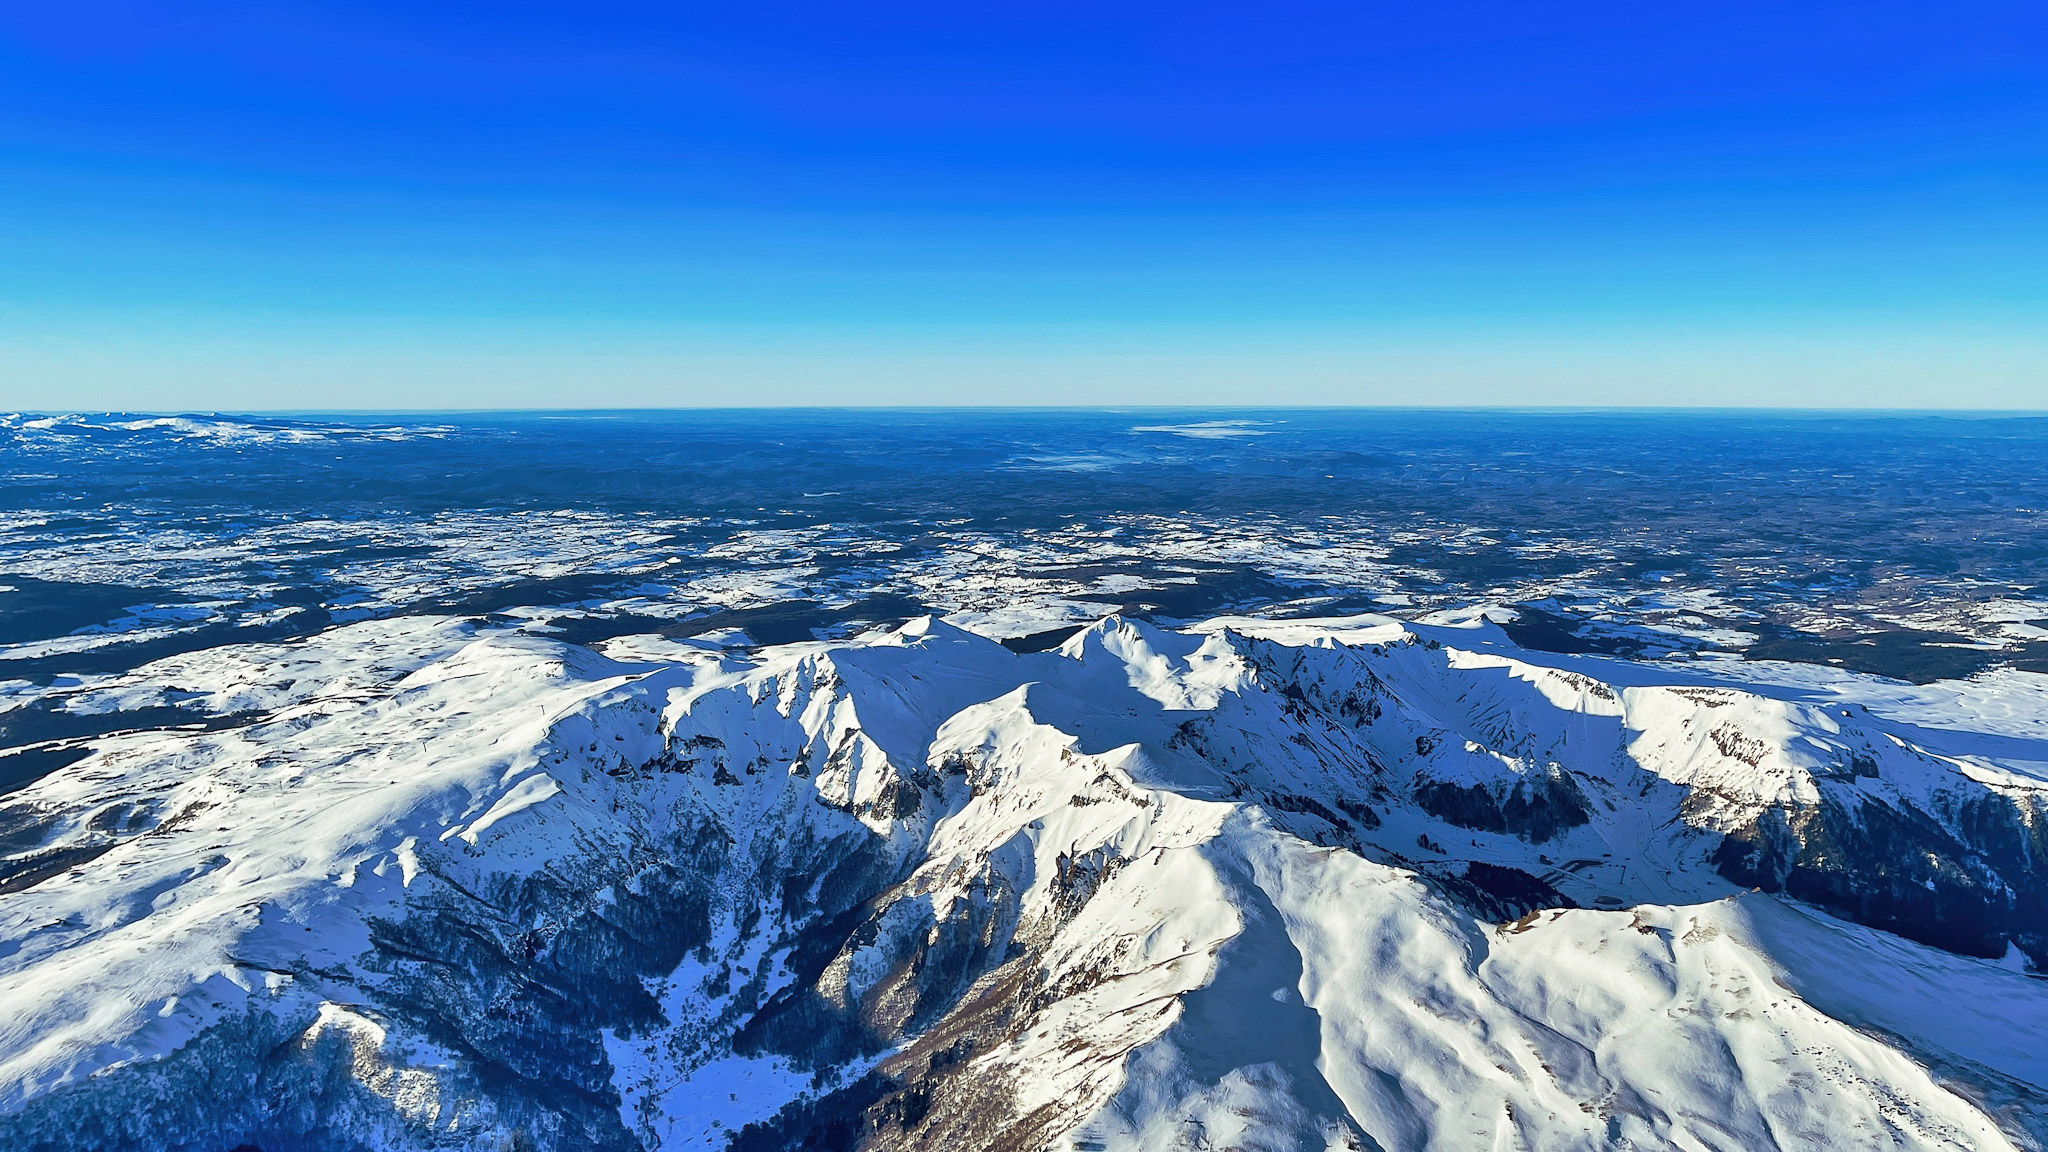 La Vallée de Chaudefour et les sommets du Massif du Sancy